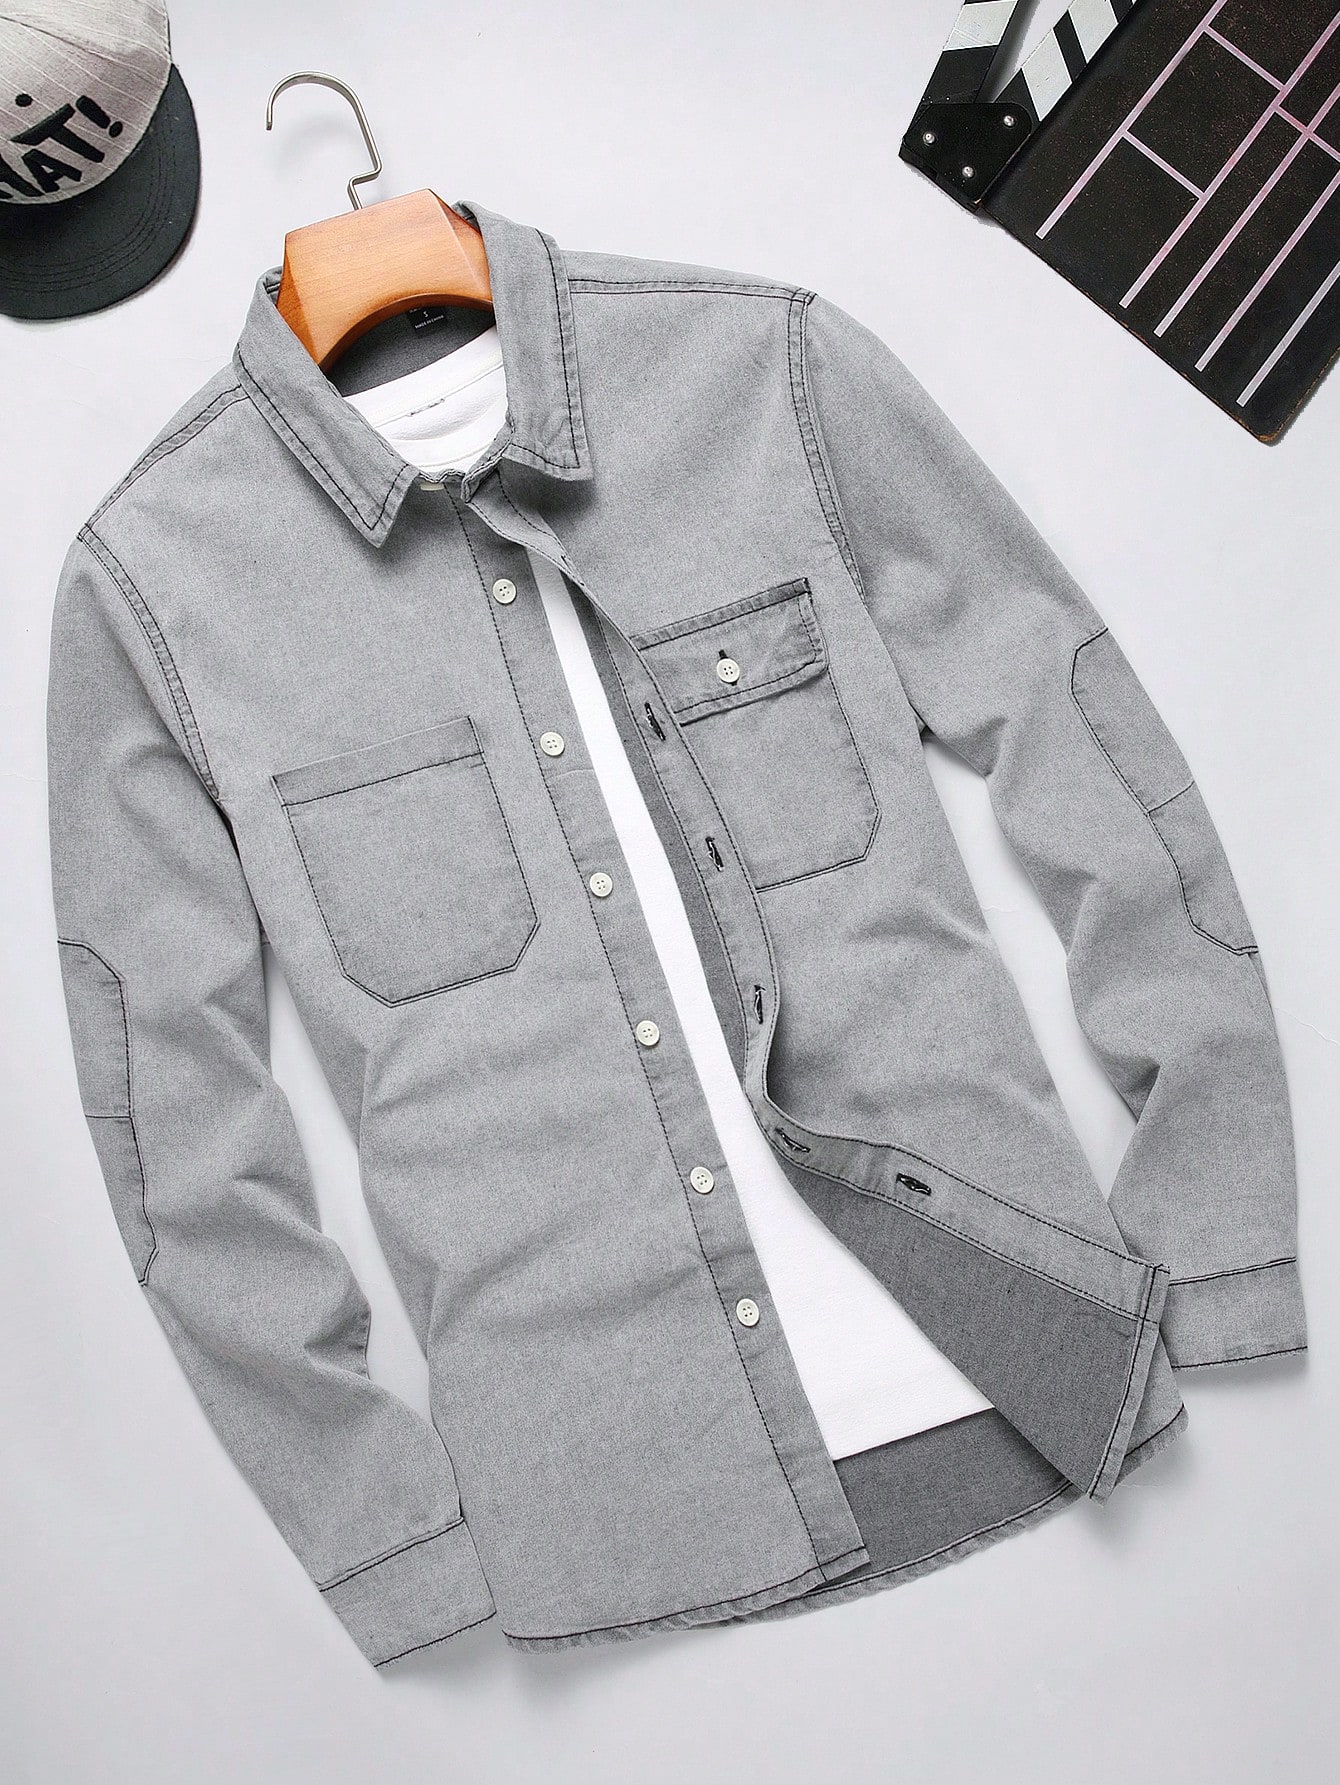 Мужская джинсовая рубашка Manfinity EMRG с длинными рукавами и карманами, серый